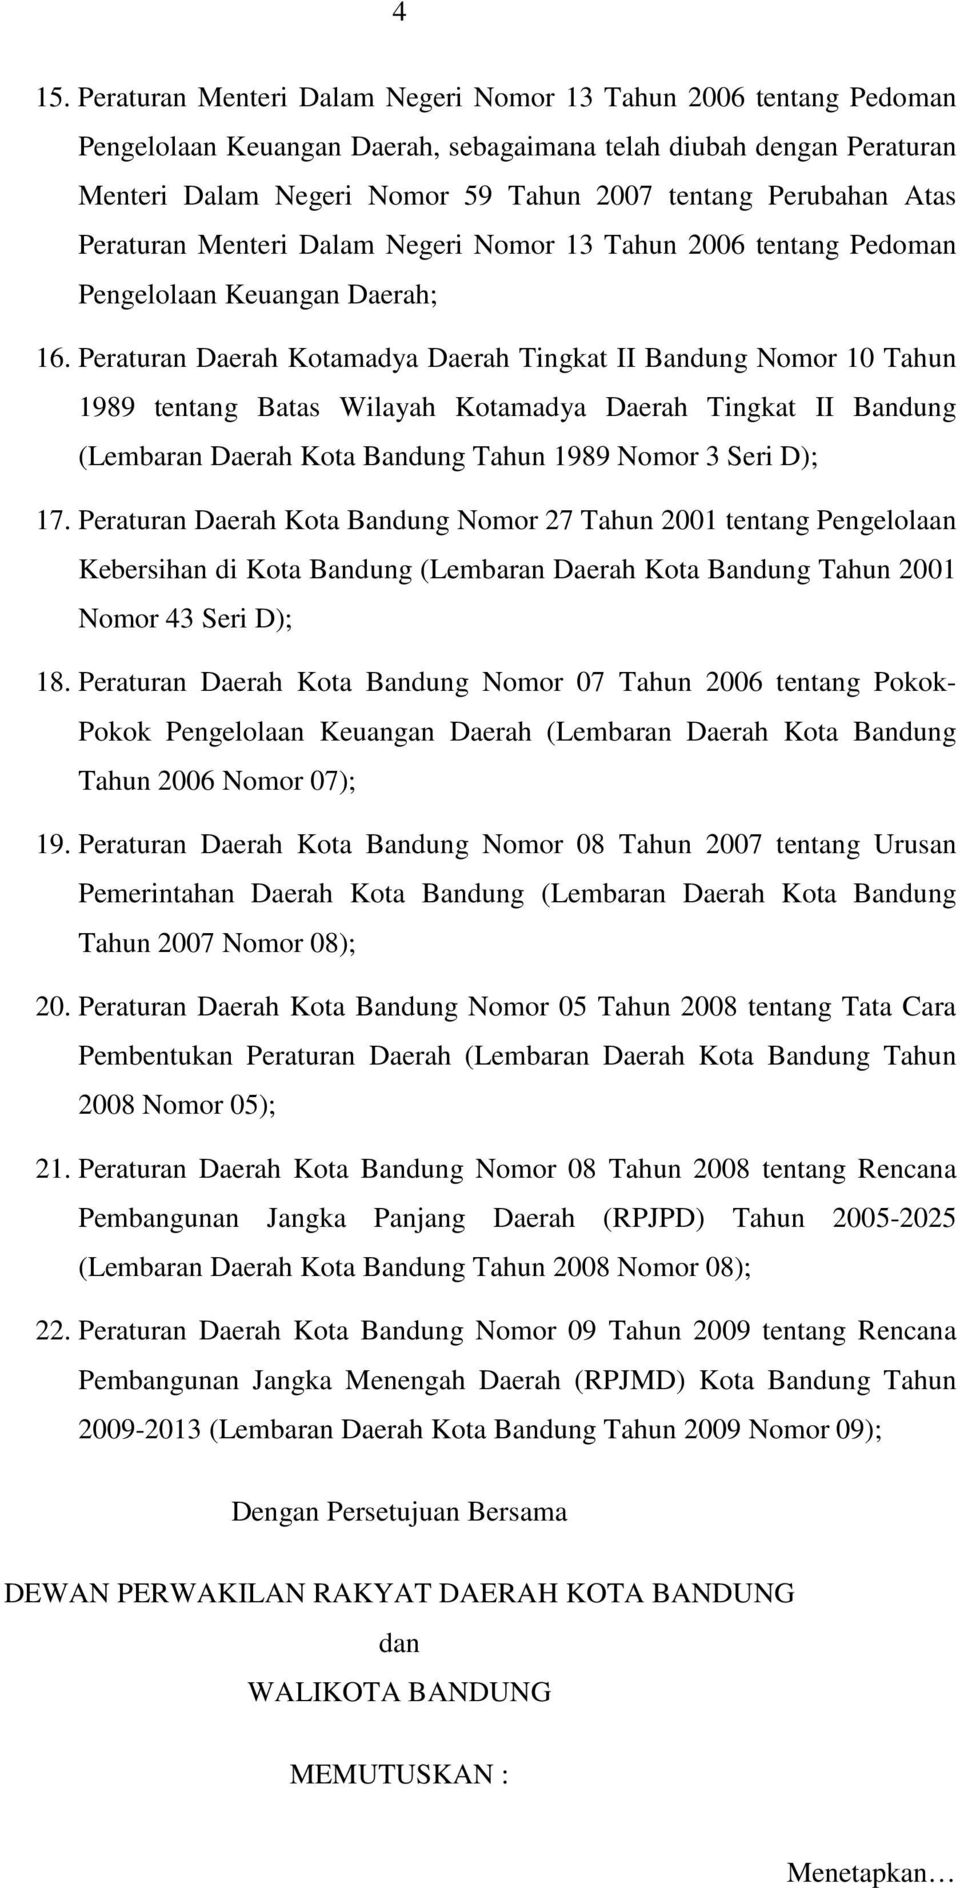 Peraturan Daerah Kotamadya Daerah Tingkat II Bandung Nomor 10 Tahun 1989 tentang Batas Wilayah Kotamadya Daerah Tingkat II Bandung (Lembaran Daerah Kota Bandung Tahun 1989 Nomor 3 Seri D); 17.